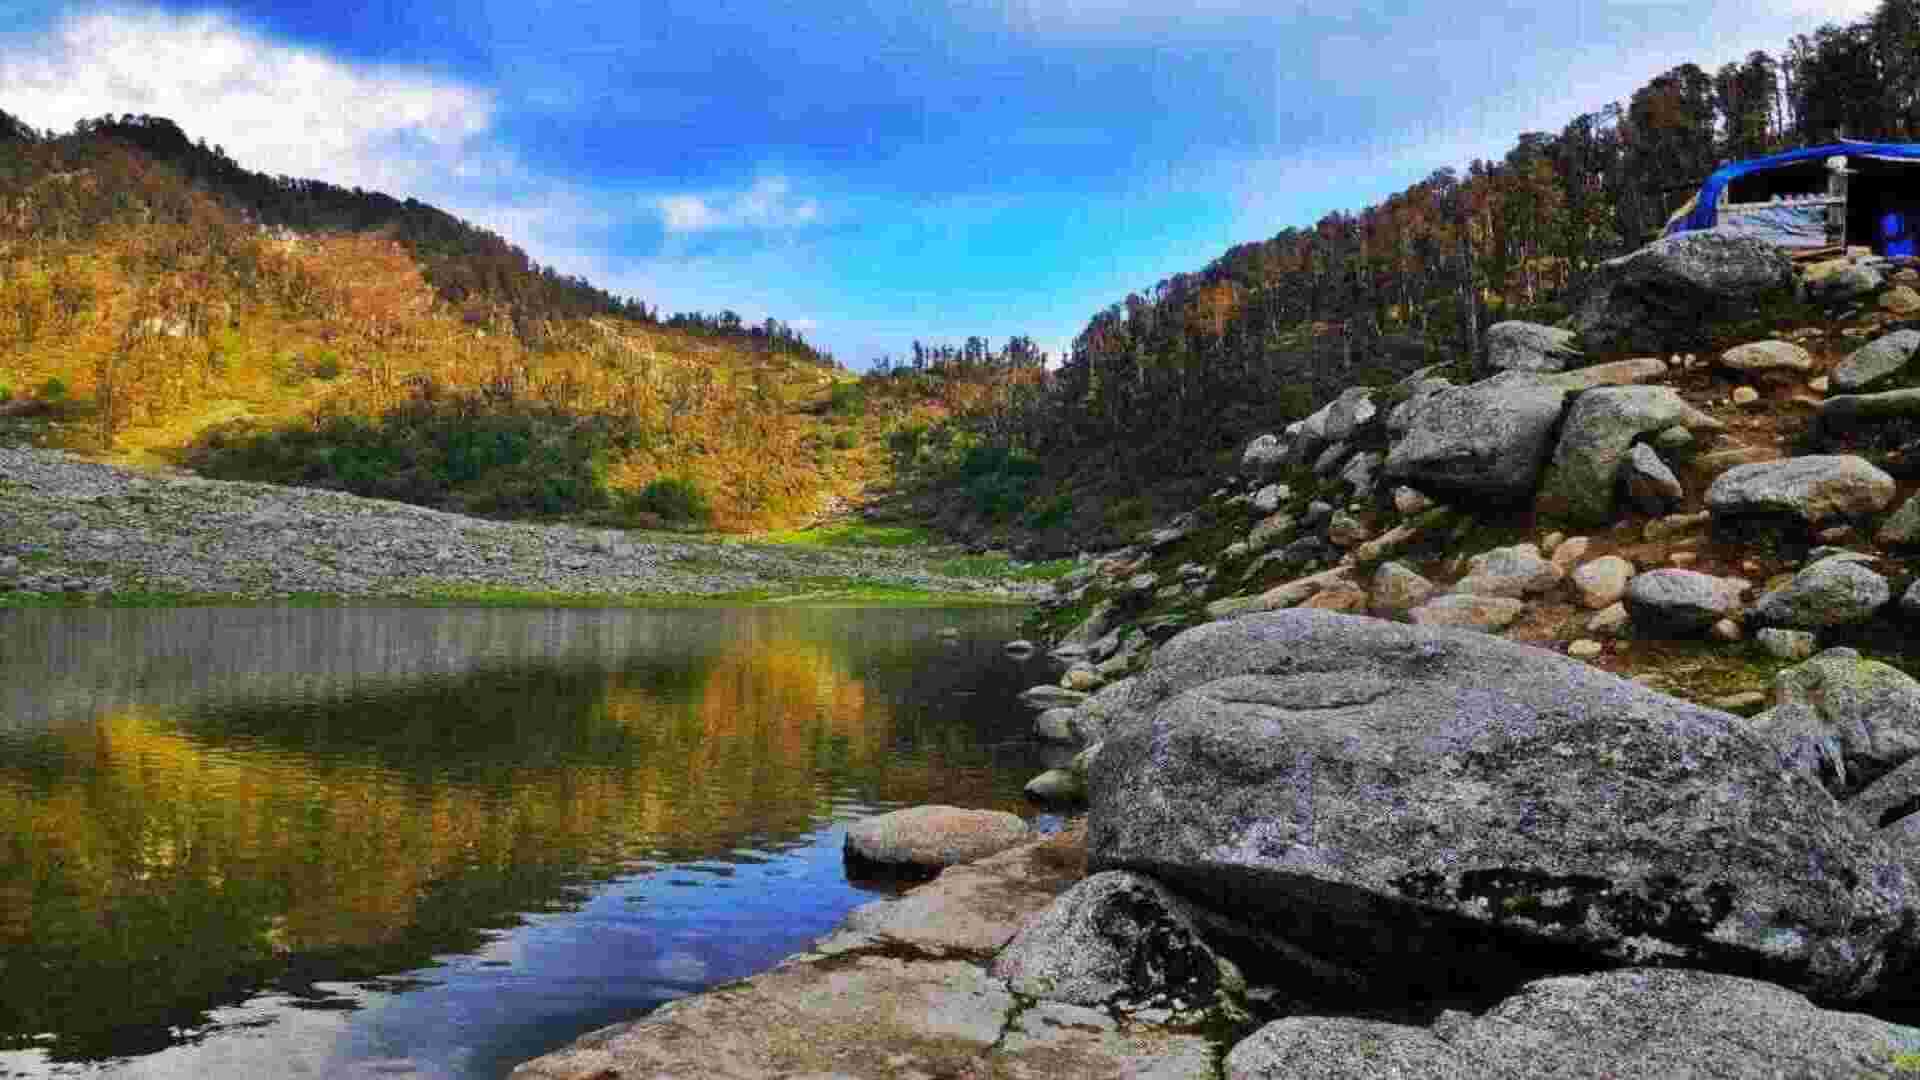 Top Dhauladhar Lakes to Visit in Himachal Pradesh